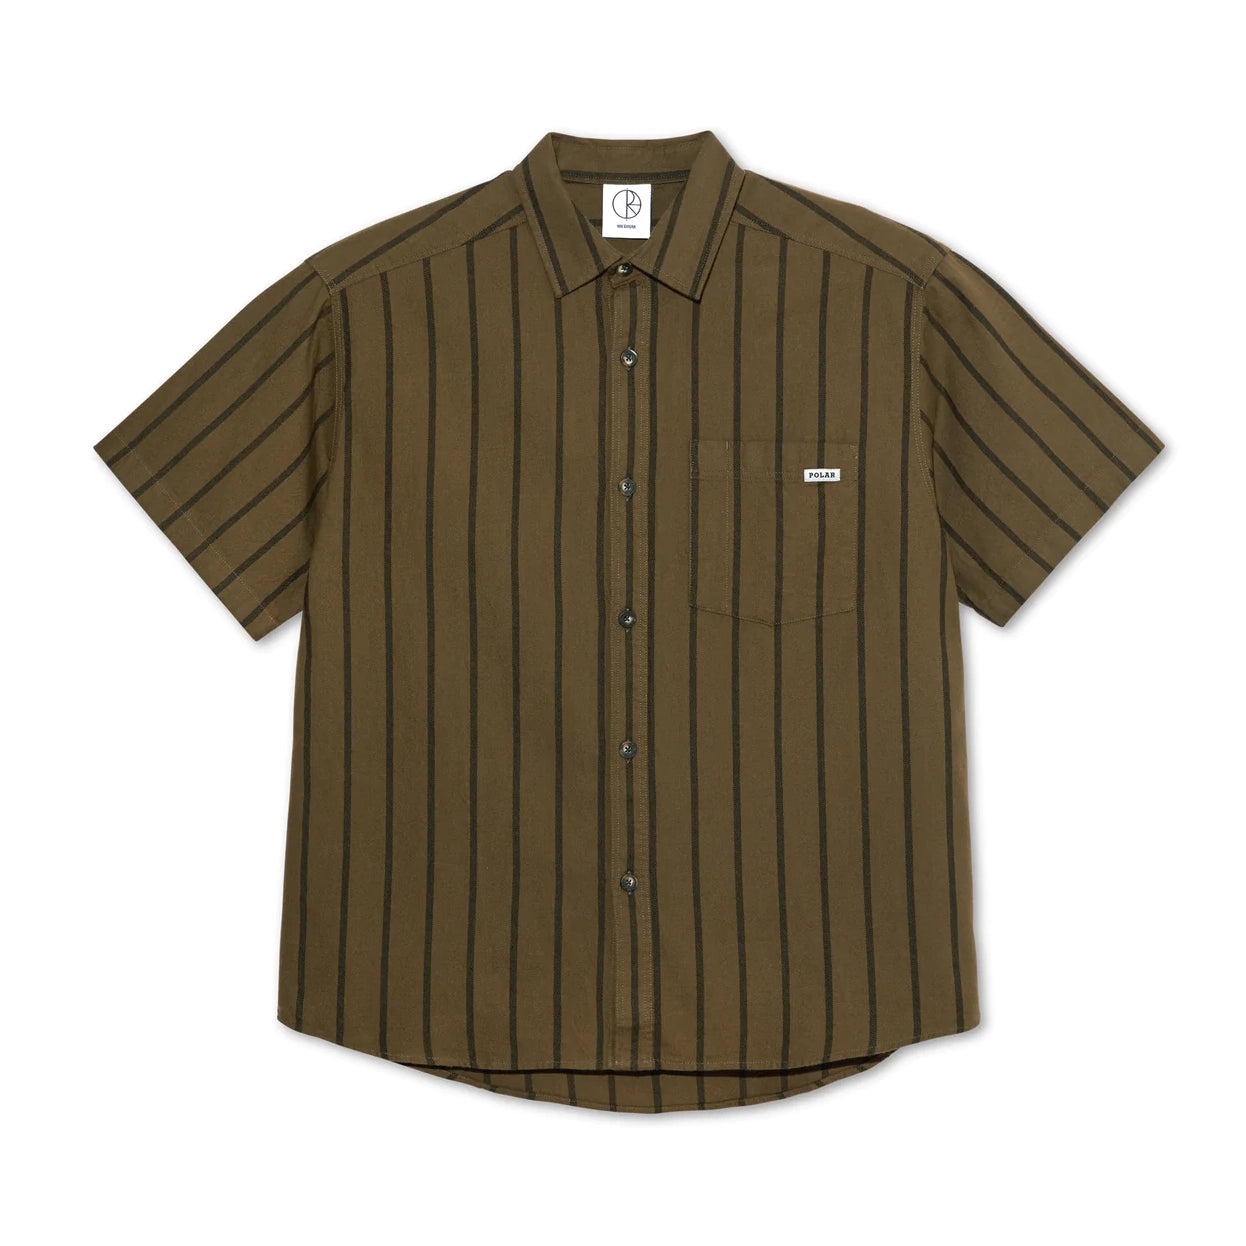 Mitchell Shirt, Beech / Black